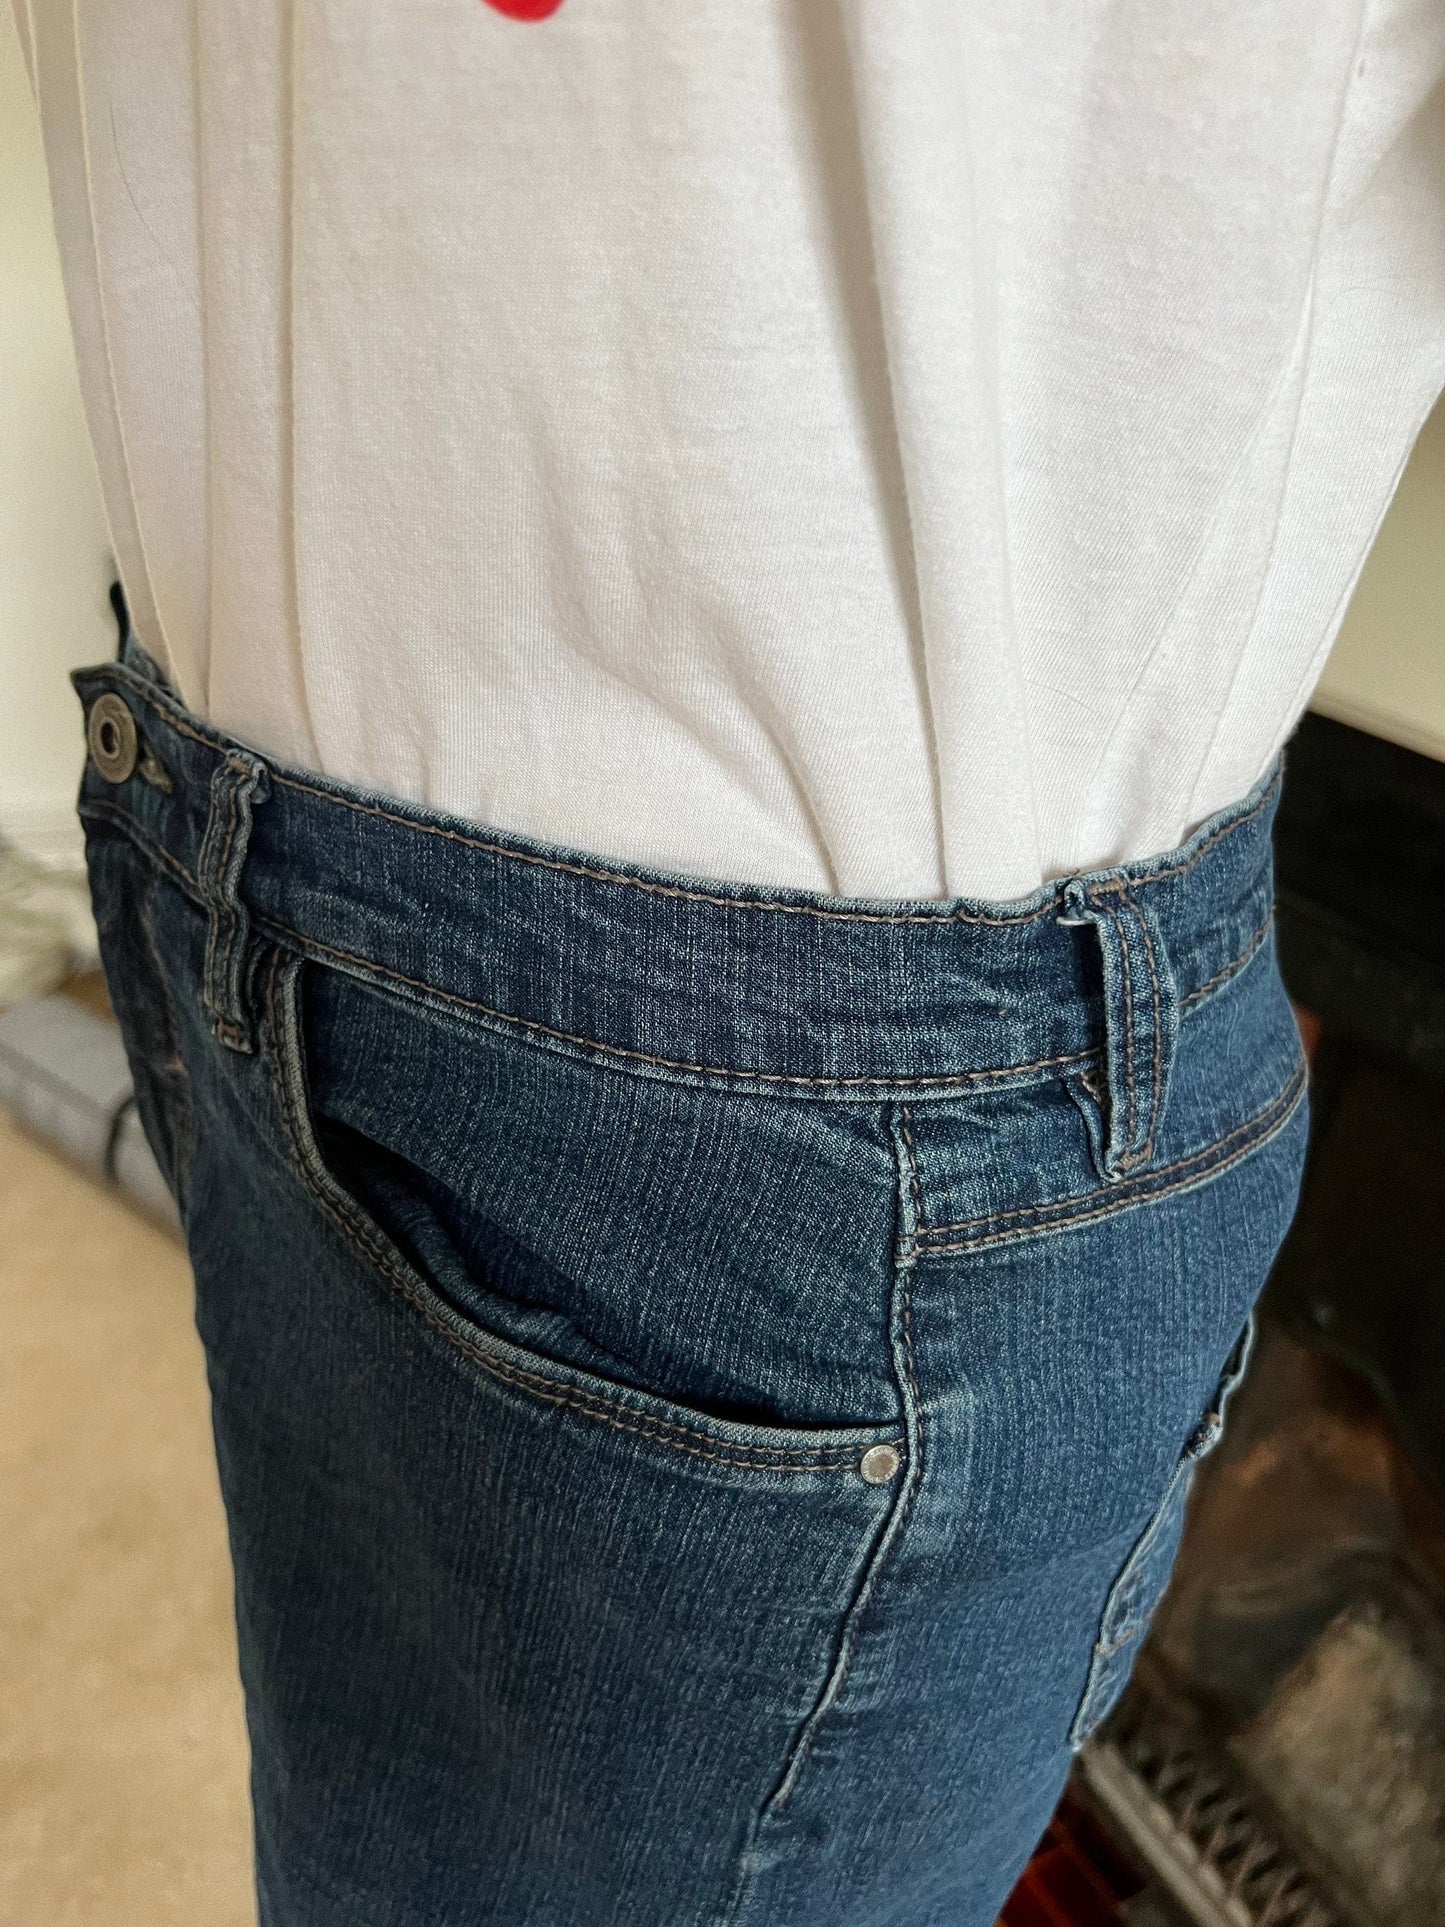 Vintage blue mid rise jeans, UK 14 waist 32” Leg 27” 80s cropped jeans